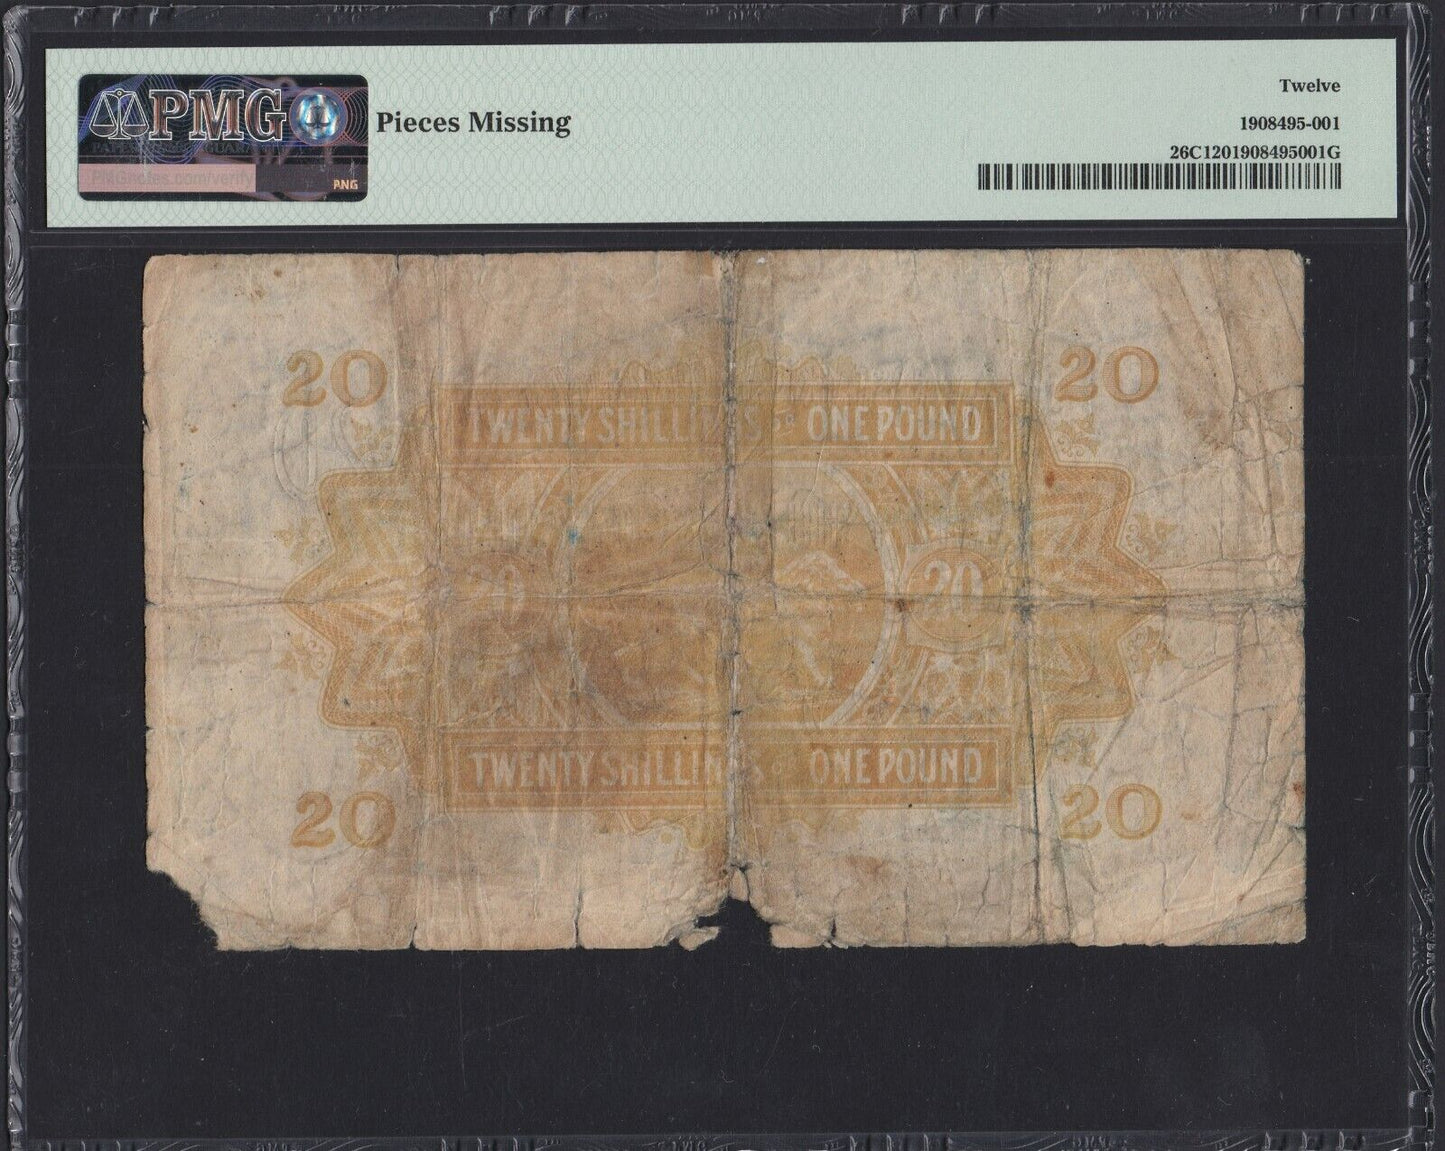 AFRIQUE DE L'EST - EAST AFRICA - 20 Shillings / 1 Pound 1939 P.26C Rare PMG 12